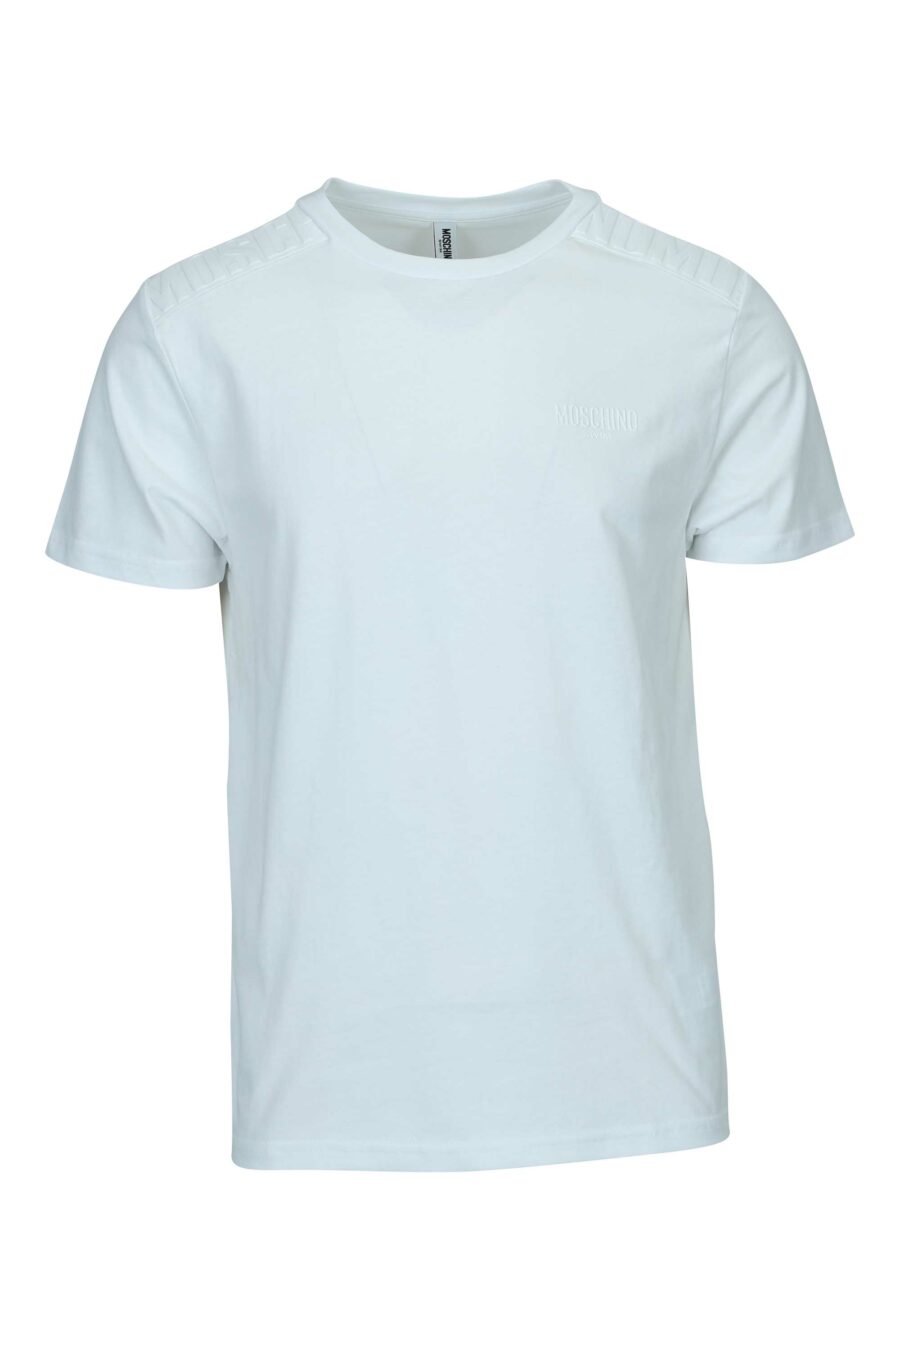 Camiseta blanca con logo monocromático de goma en hombros - 667113671932